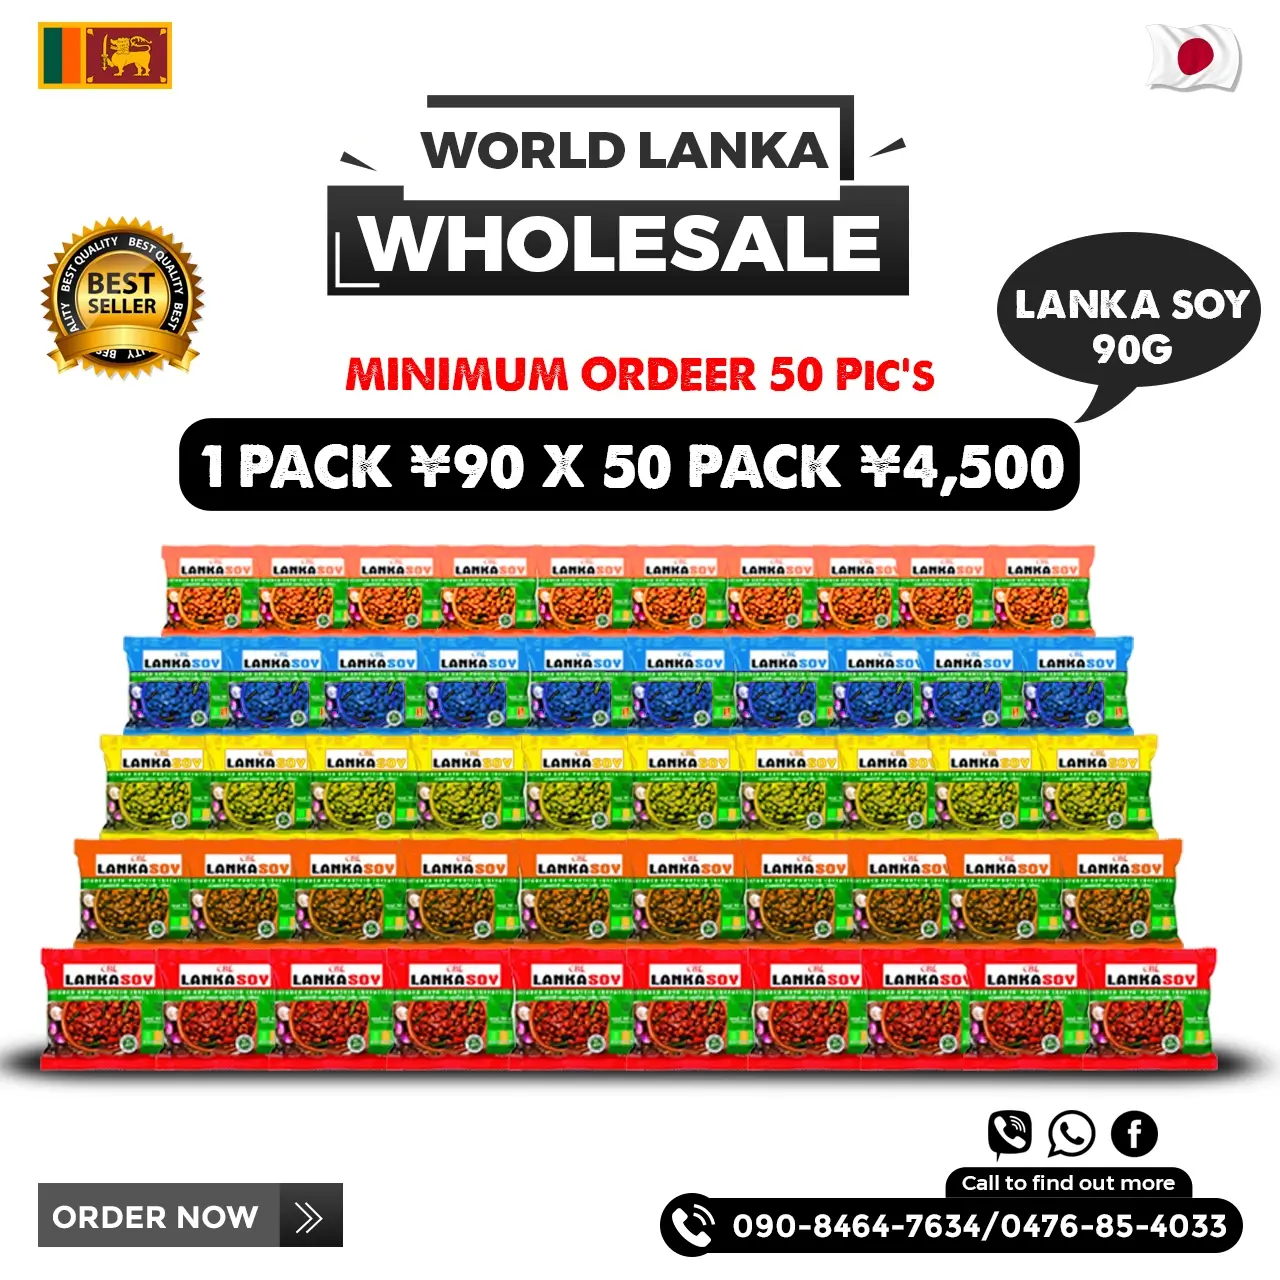 Lanka Soy Wholesale